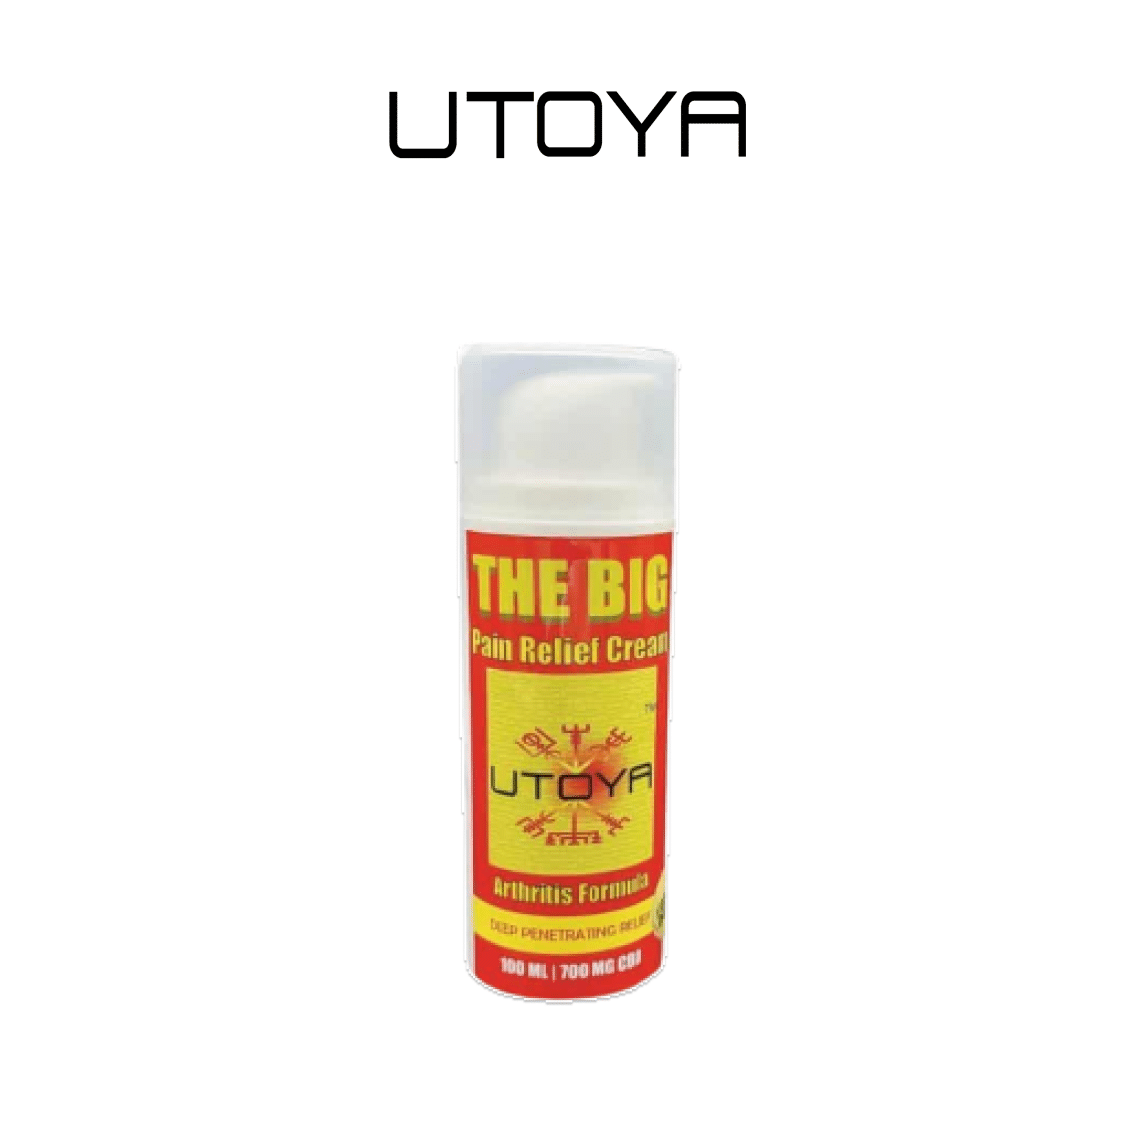 Utoya | Lima Blend Delta 8 + THC-P Disposable Vape Pen - 2g Best Price